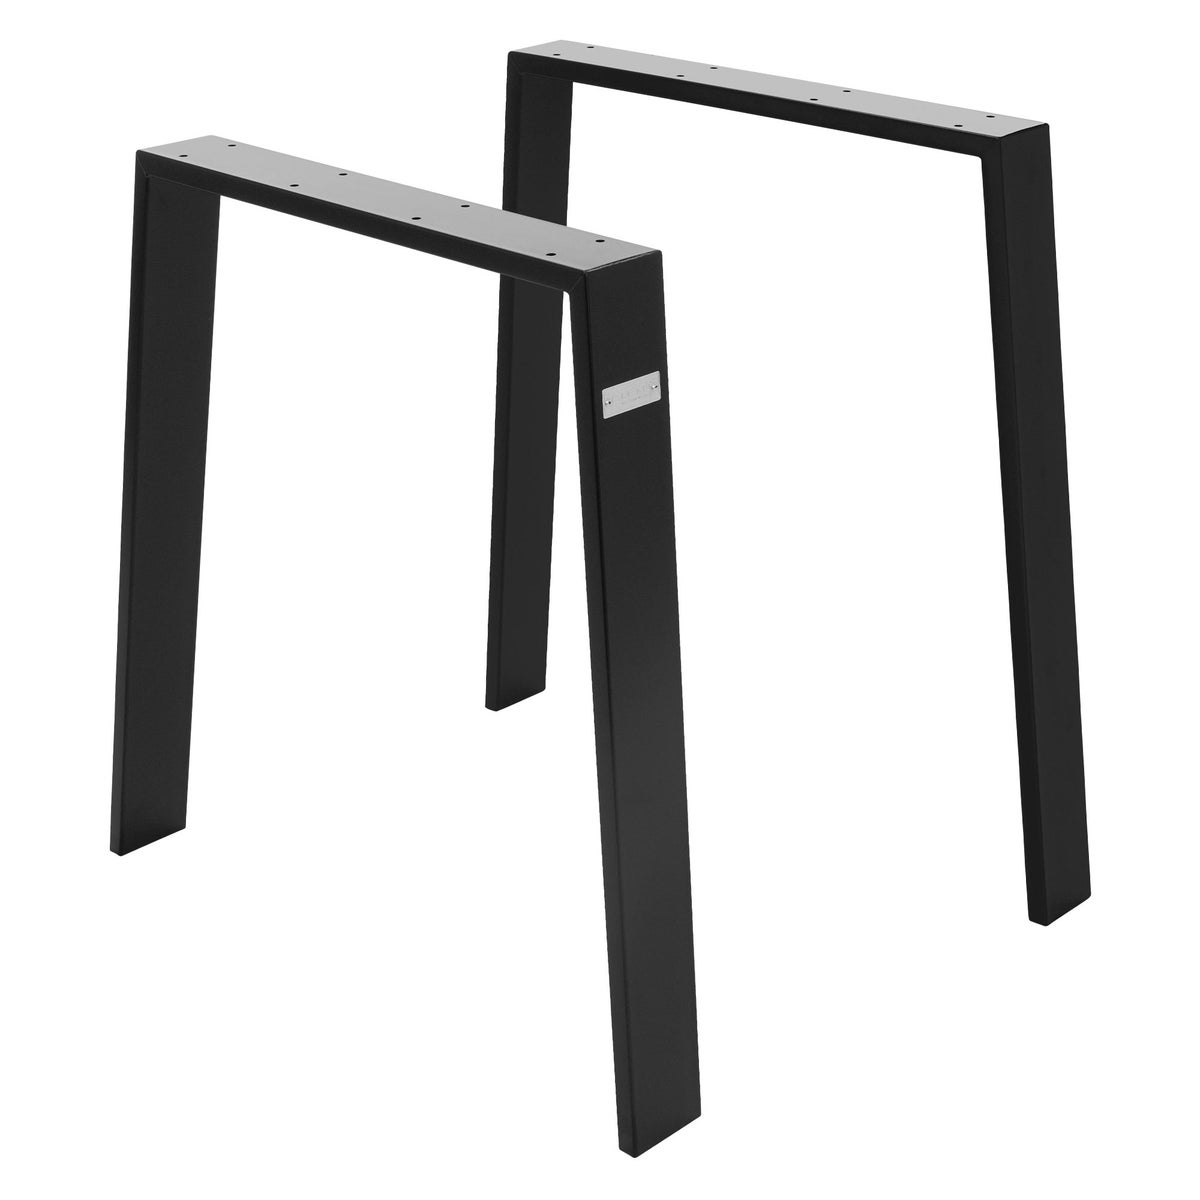 ML-Design 2er Set Tischbeine Loft 75x72 cm, Schwarz, Profil 8x2 cm, aus Stahl, Industriedesign, U-Form, Metall Tischgestell scandic, Tischkufen Tischuntergestell Möbelfüße, für Esstisch/Schreibtisch